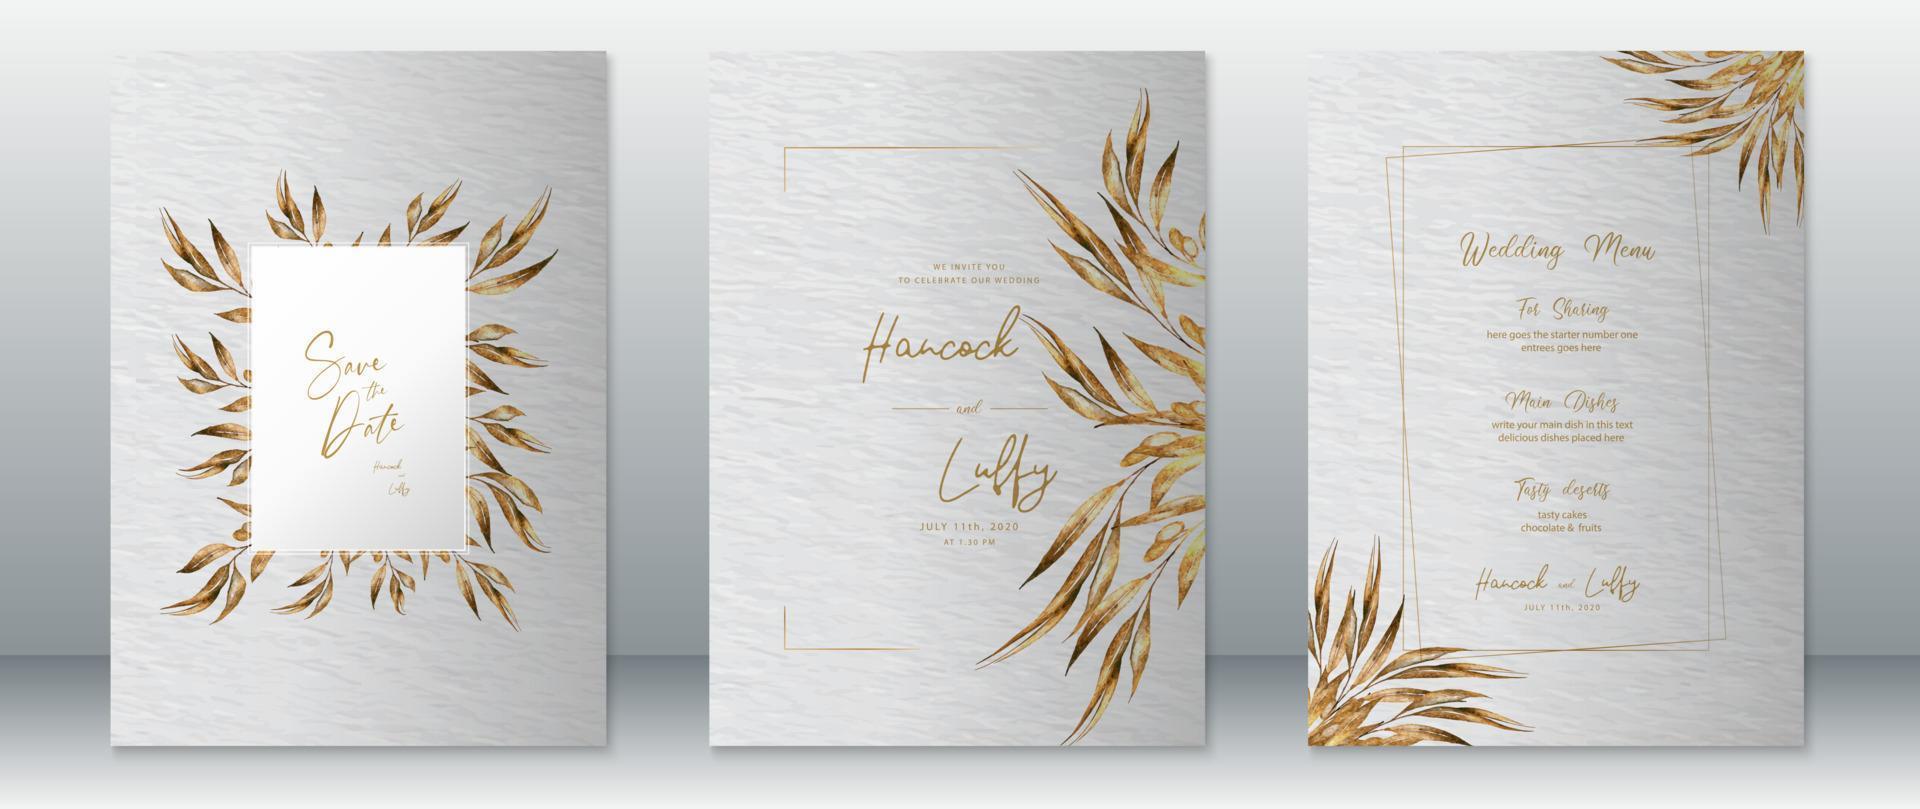 modelo de cartão de convite de casamento elegante com design dourado vetor